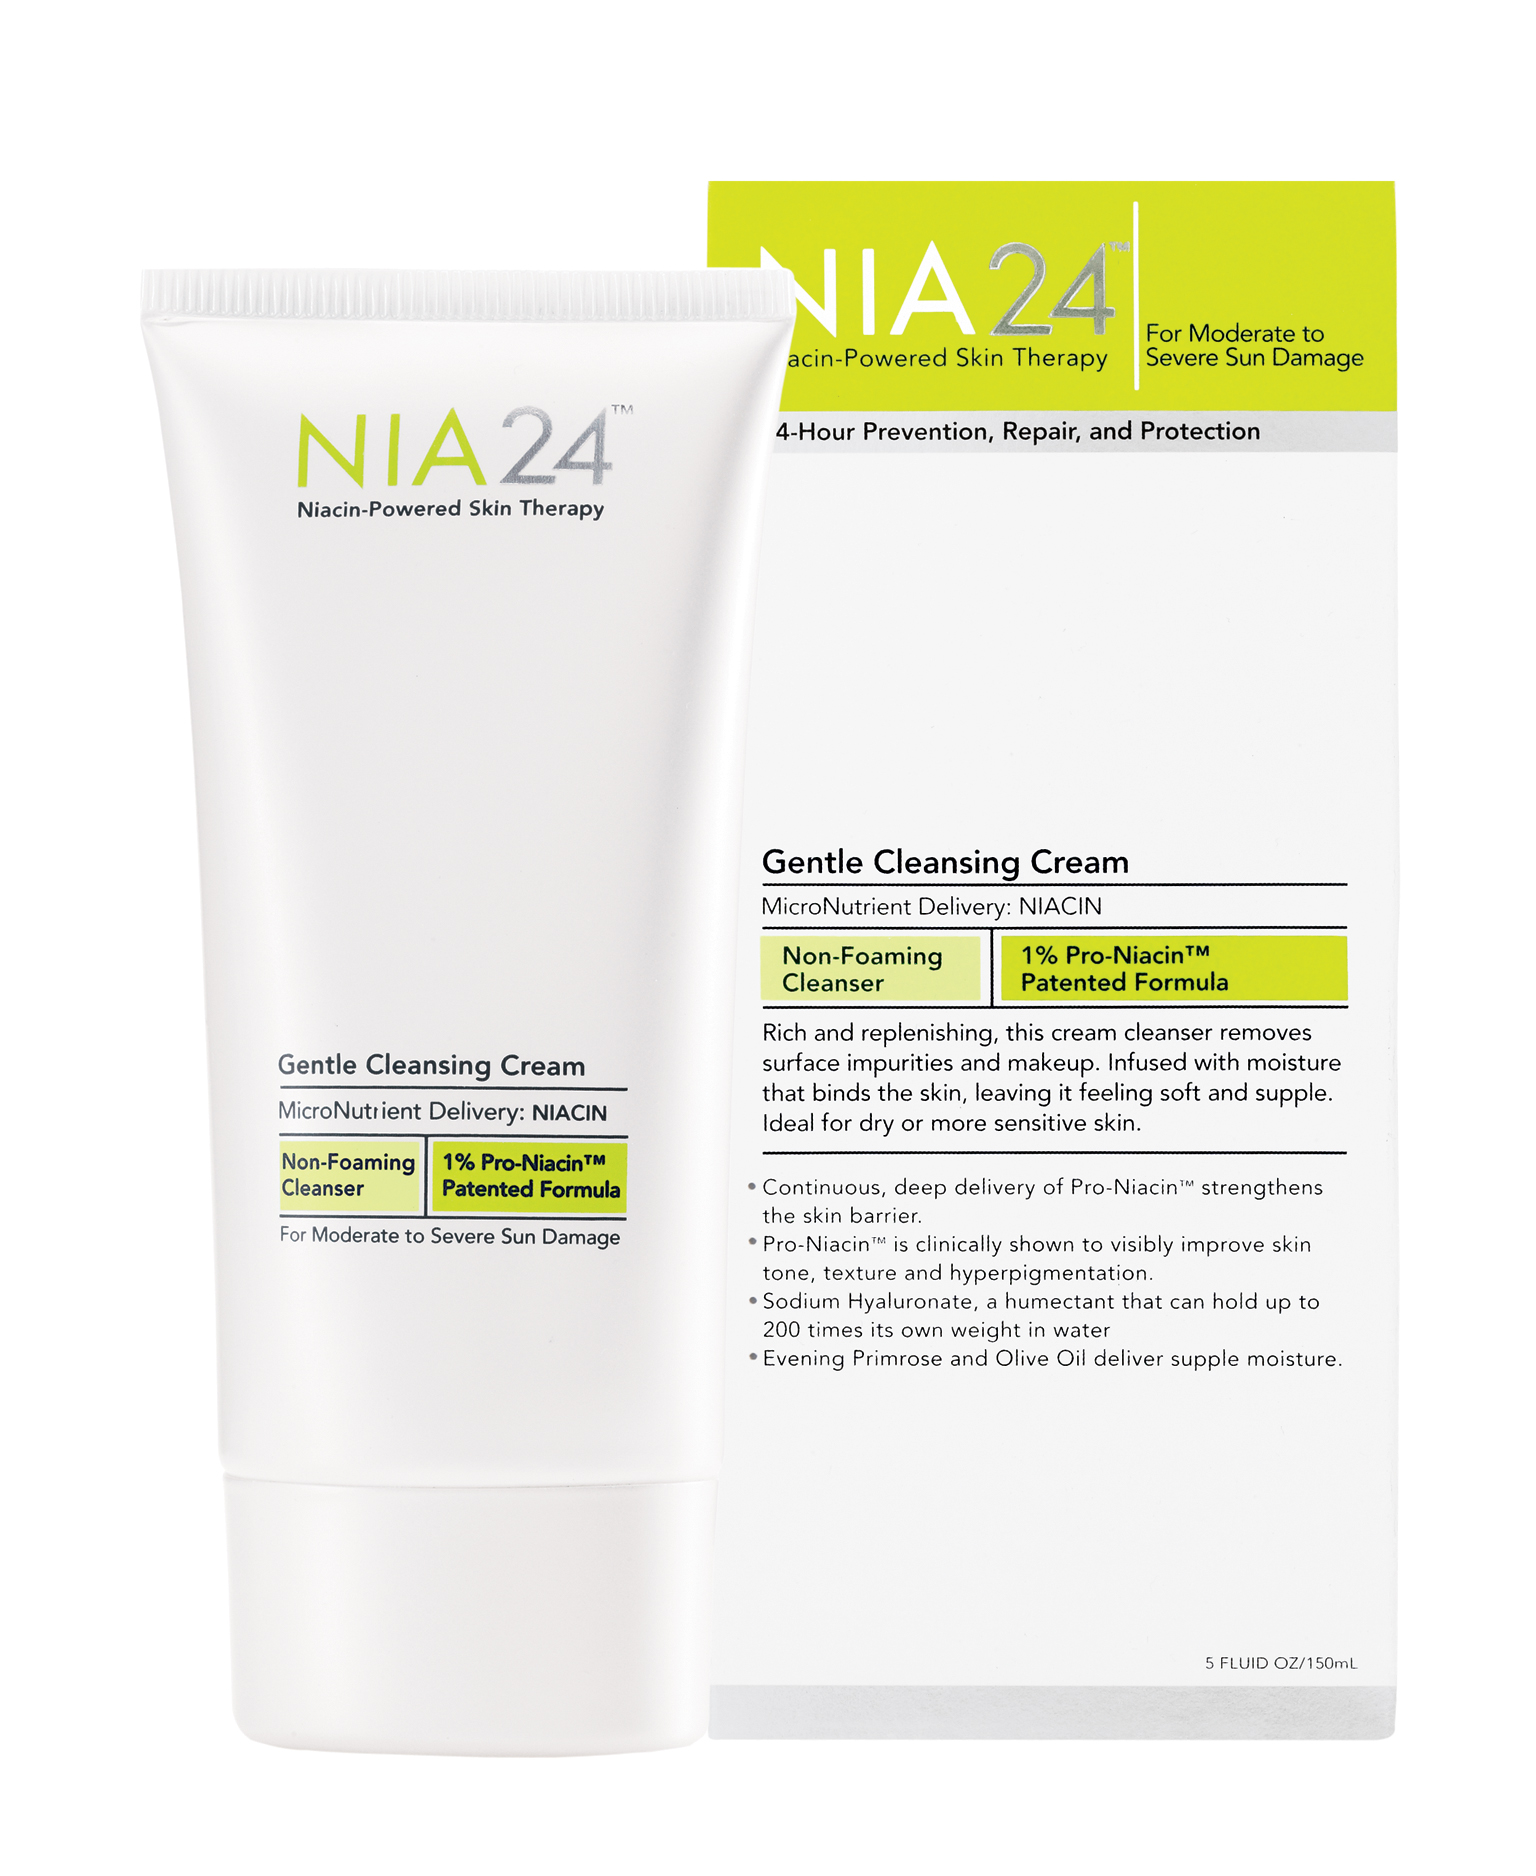 NIA 24 Gentle Cleansing Cream